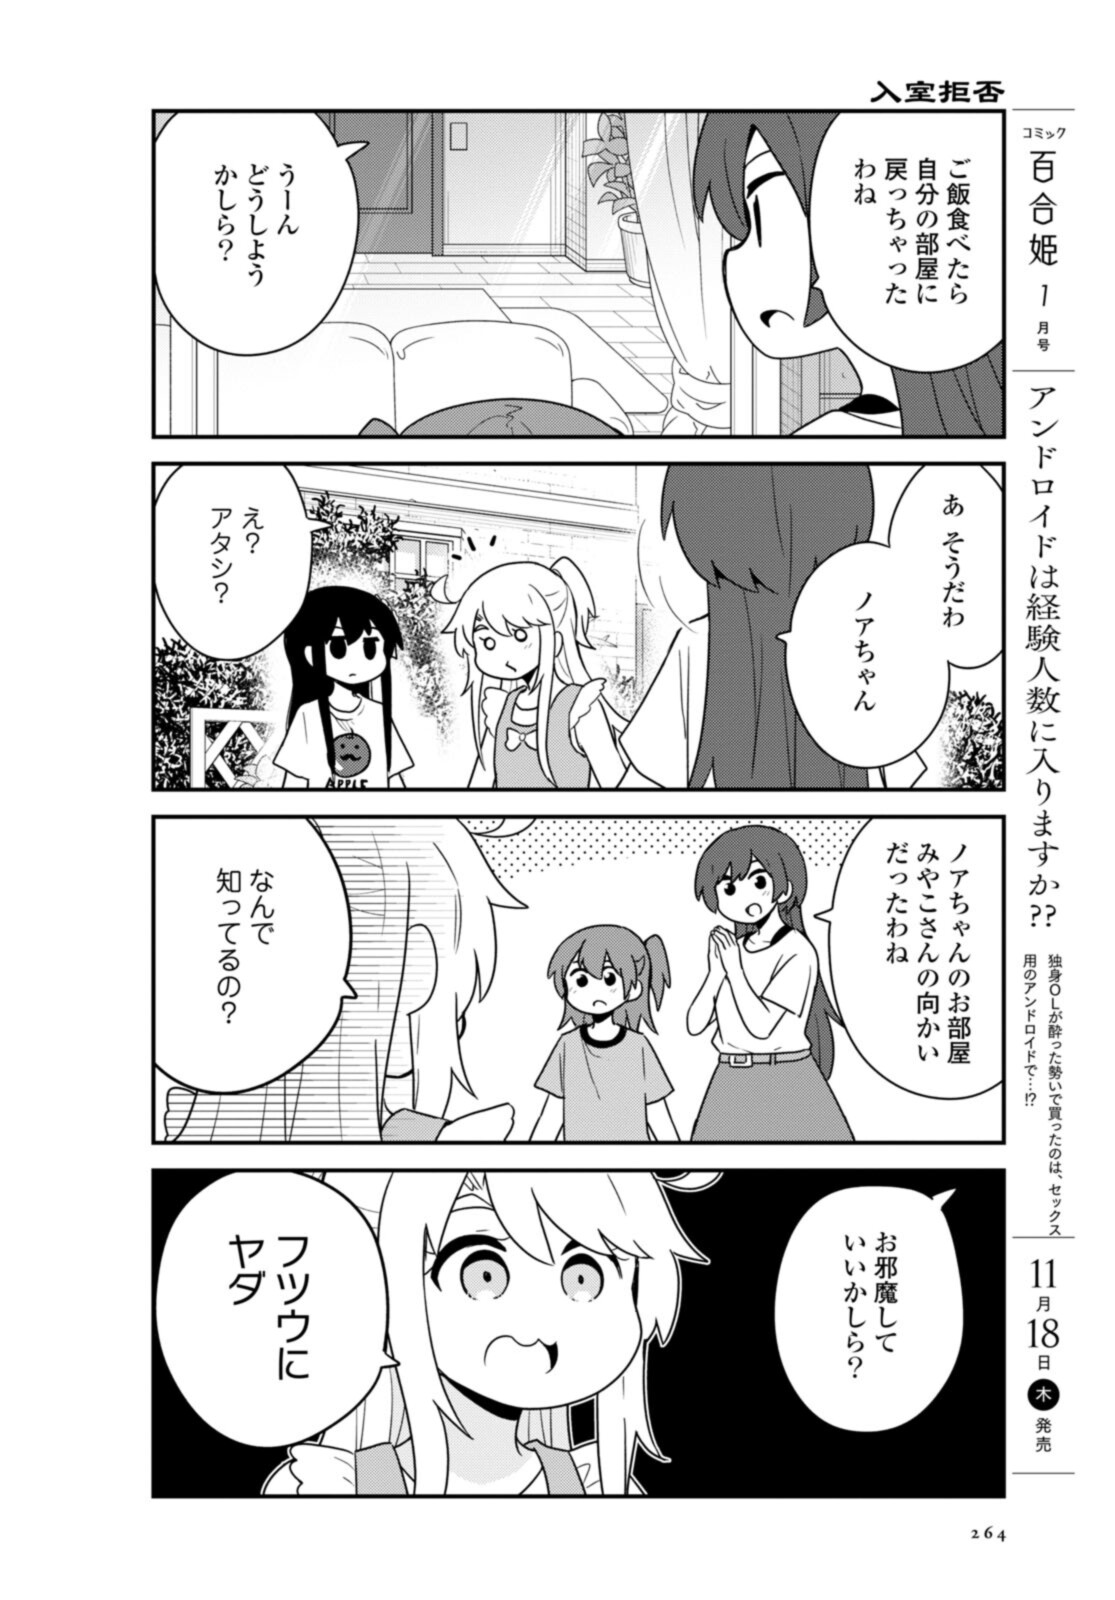 Watashi ni Tenshi ga Maiorita! - Chapter 90 - Page 12